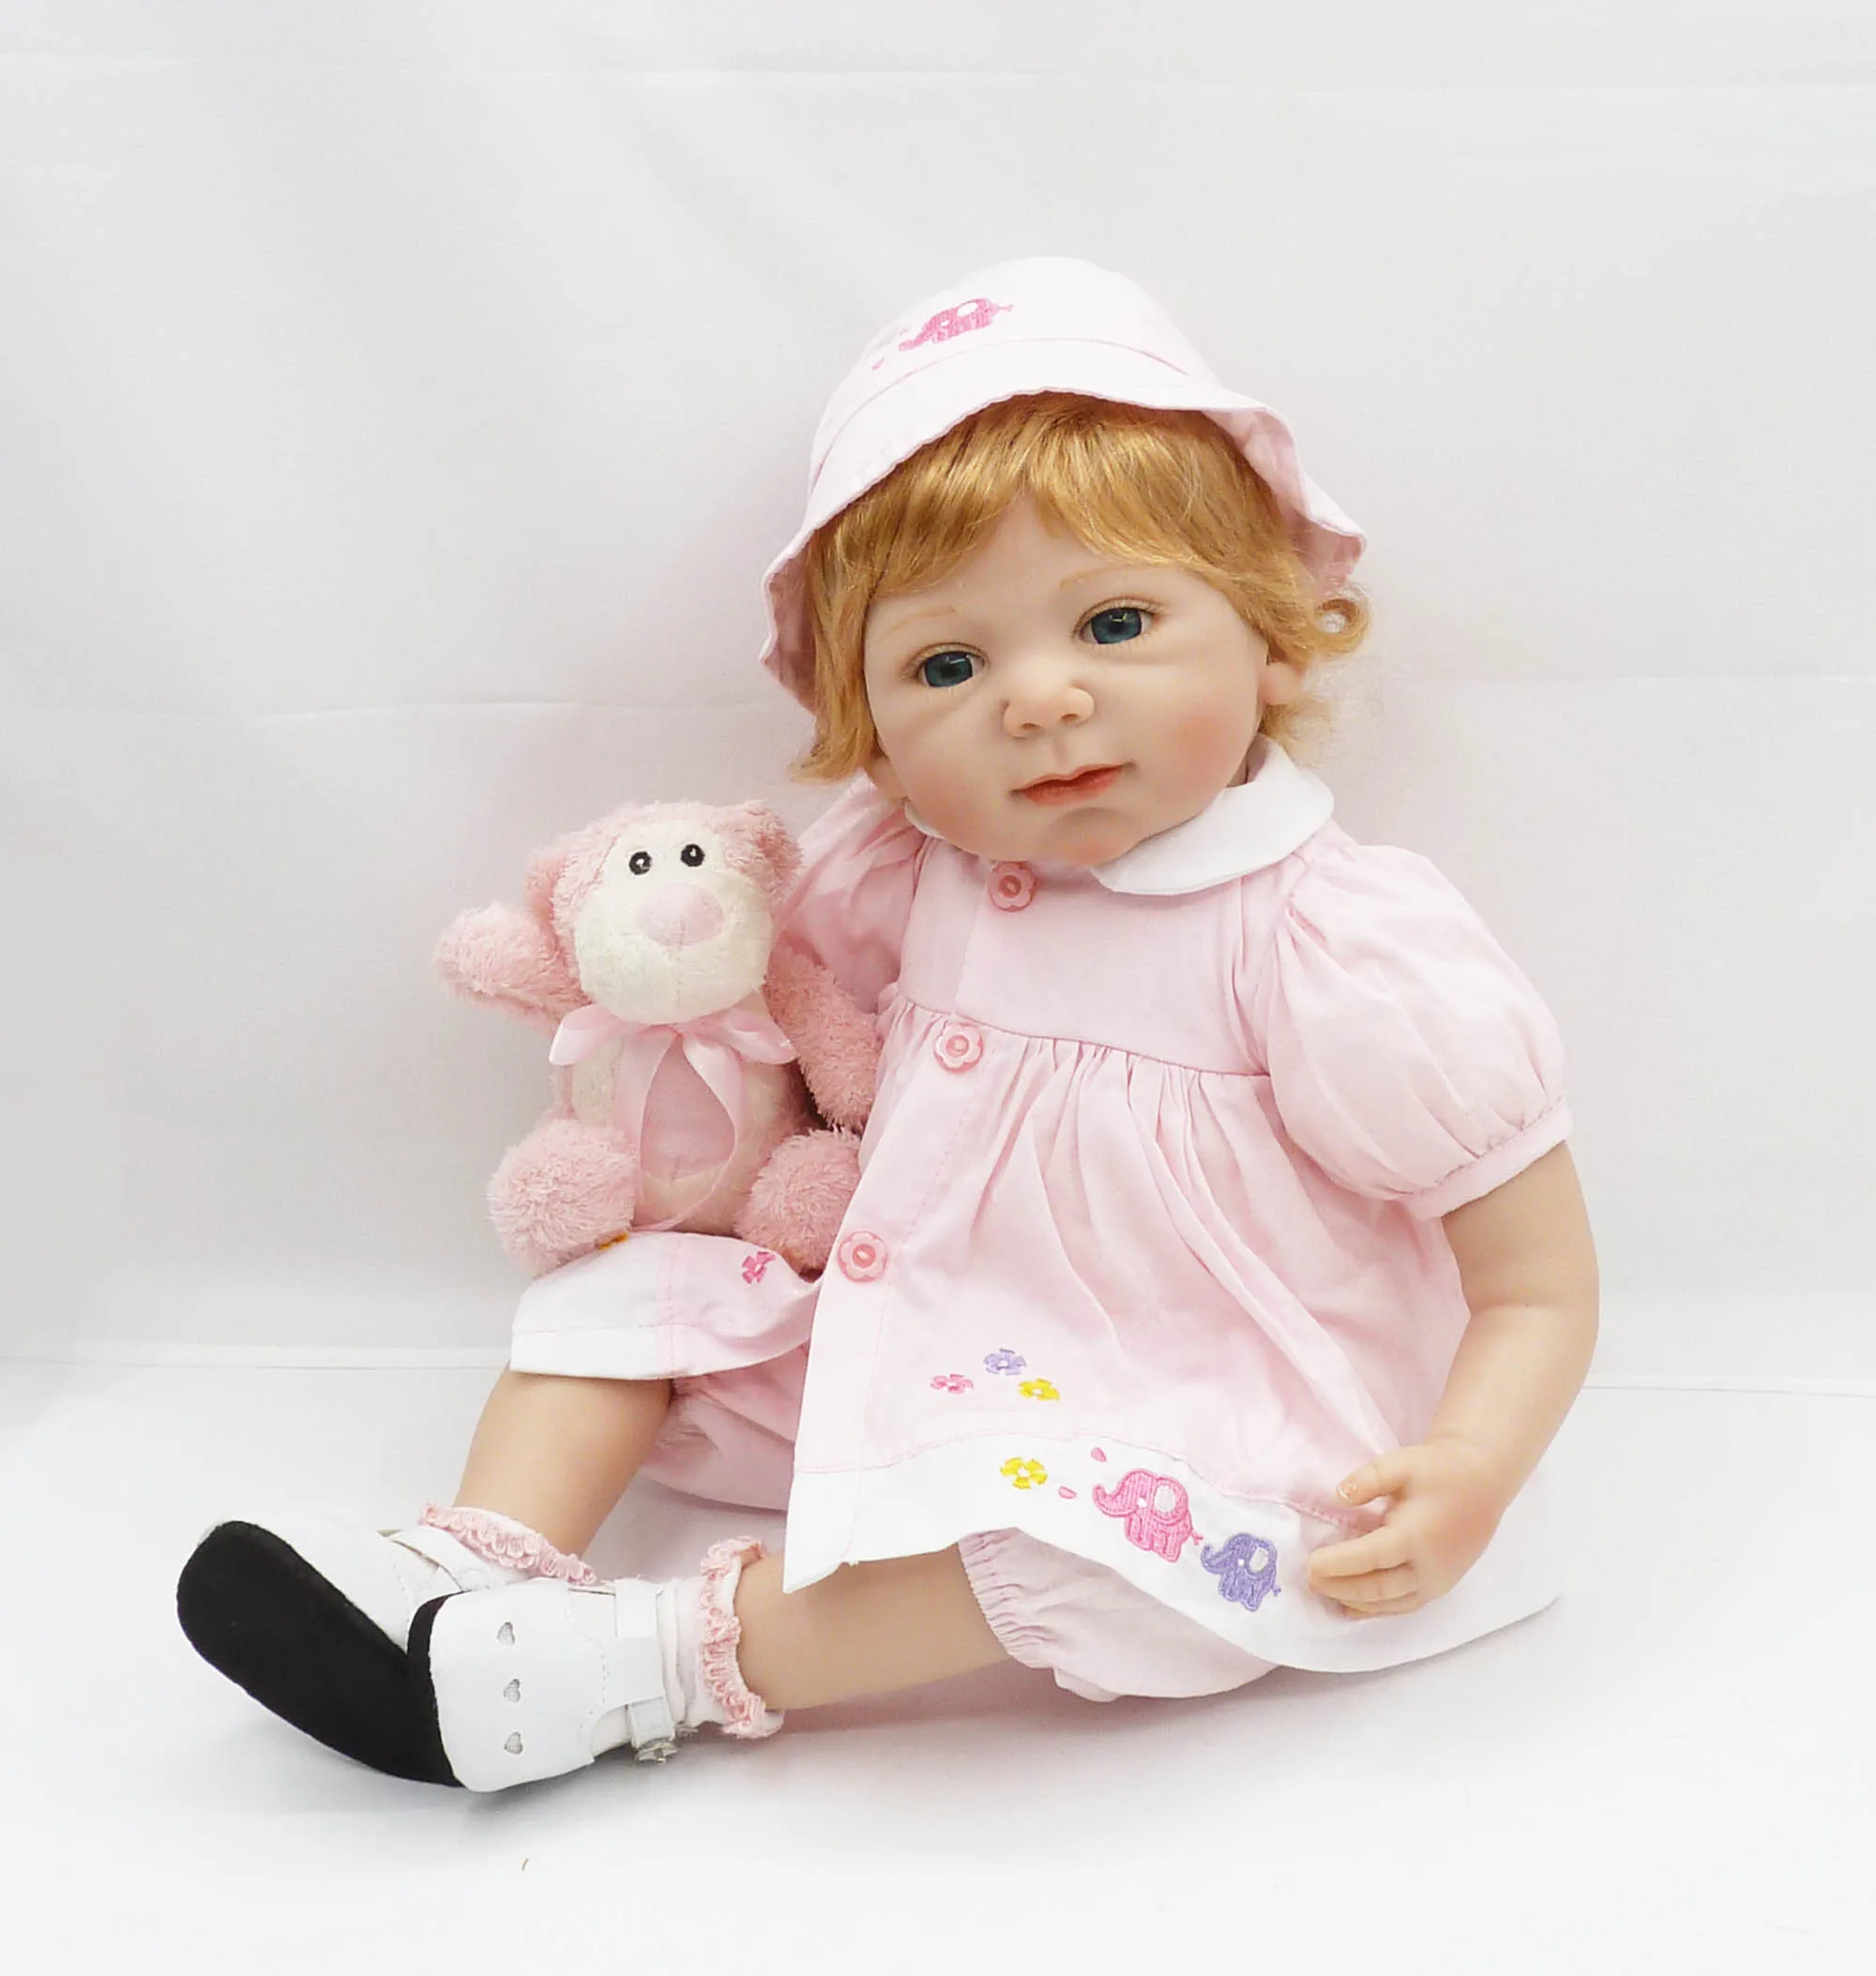 20 дюймов хлопок тело силиконовая кукла новорожденного ребенка Спящая девочка с милой одеждой детские игрушки для девочек Playmate рождественские подарки